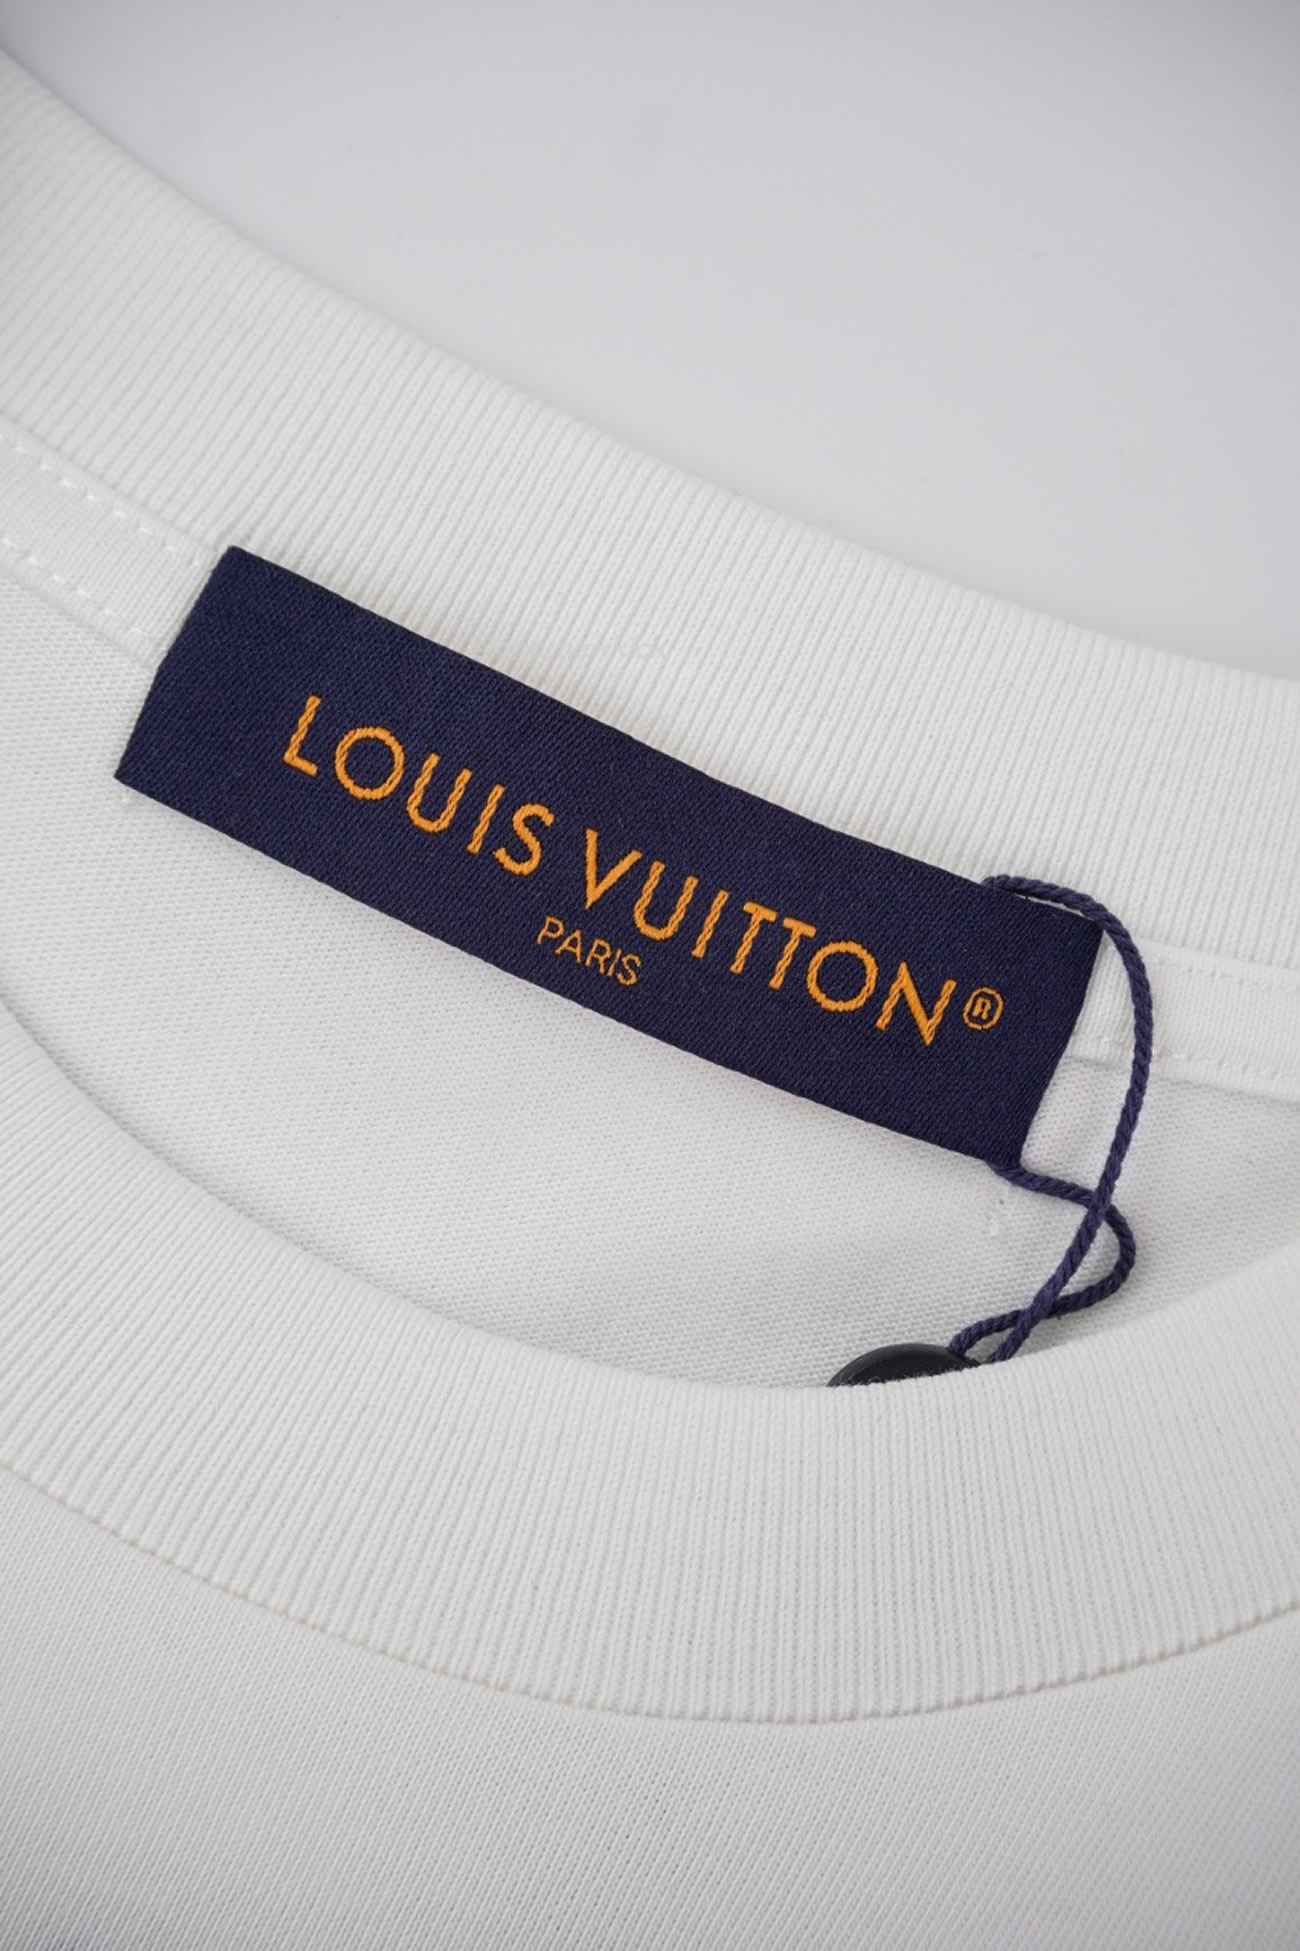 Louis Vuitton 24 Fw Pocket T Shirt (5) - newkick.org